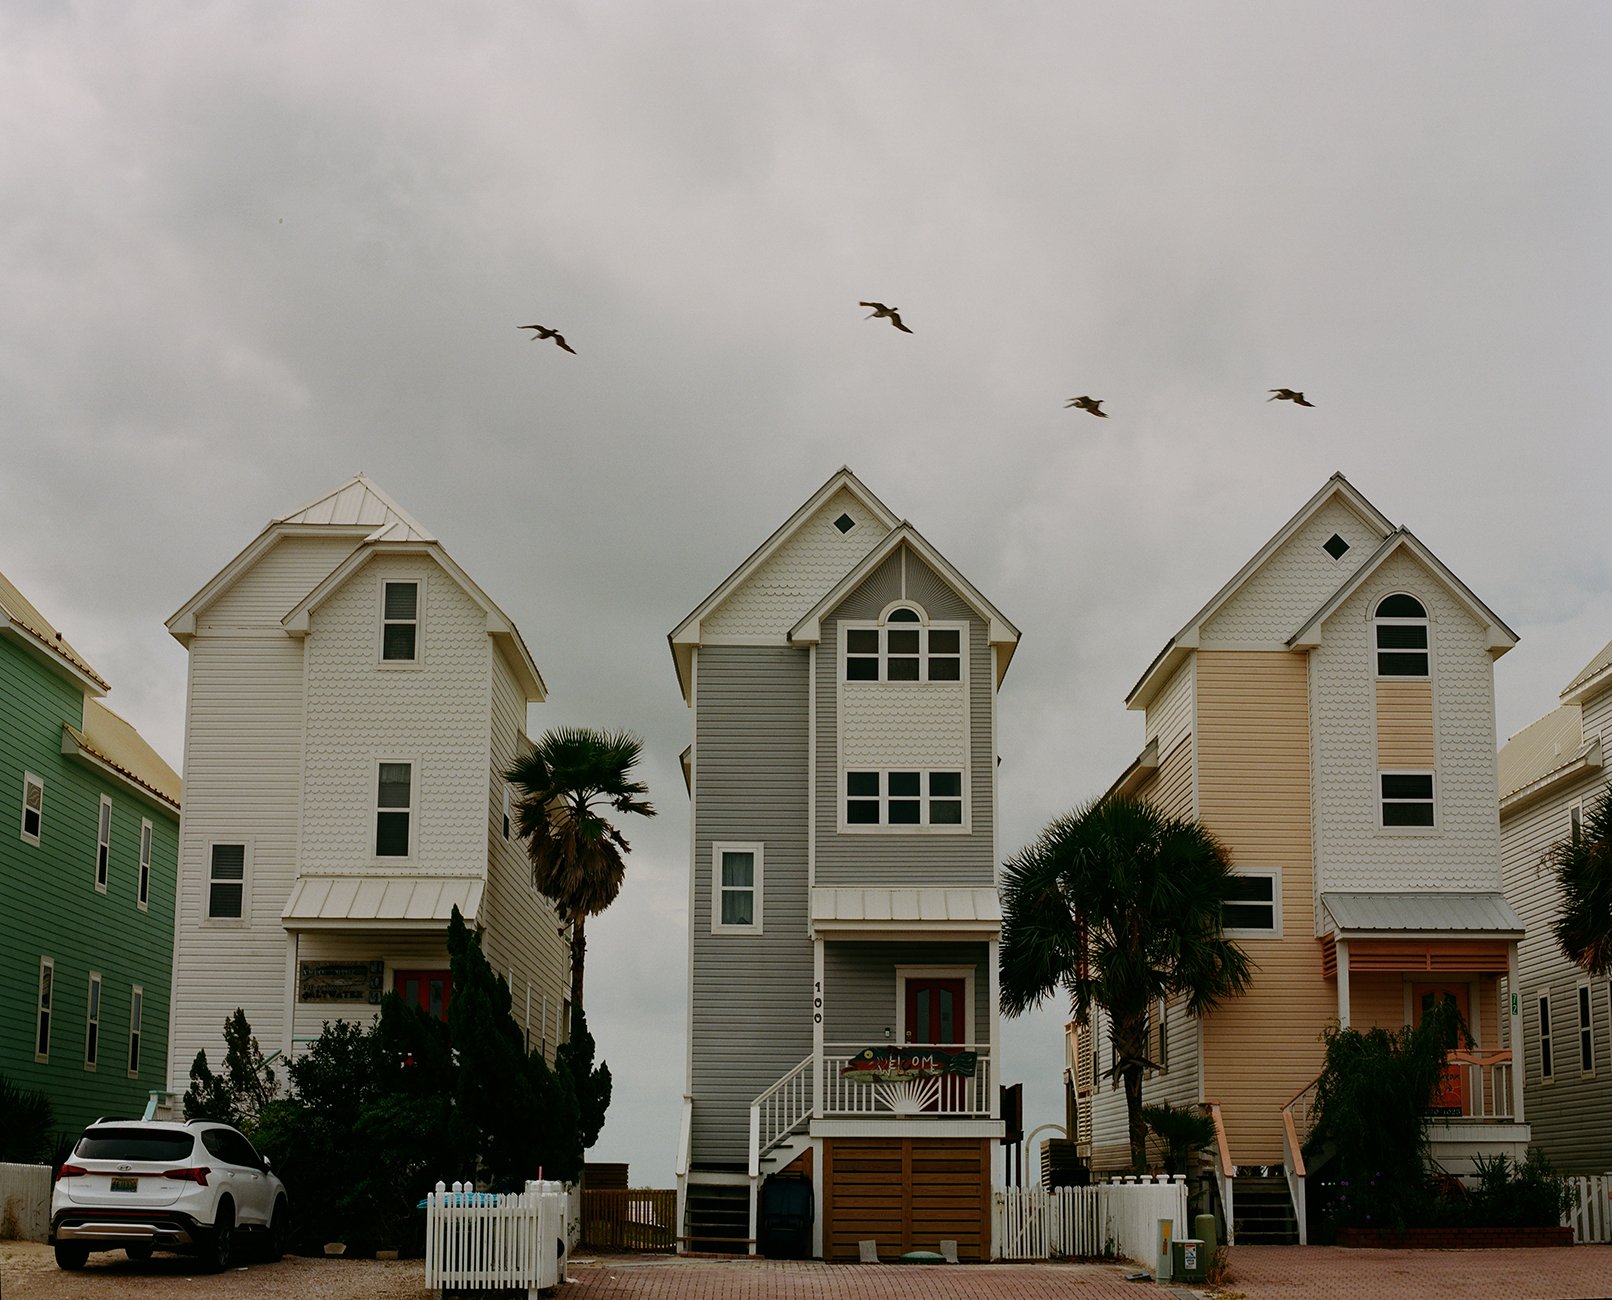   Beachfront Homes,  St. George Island, FL, 2021 